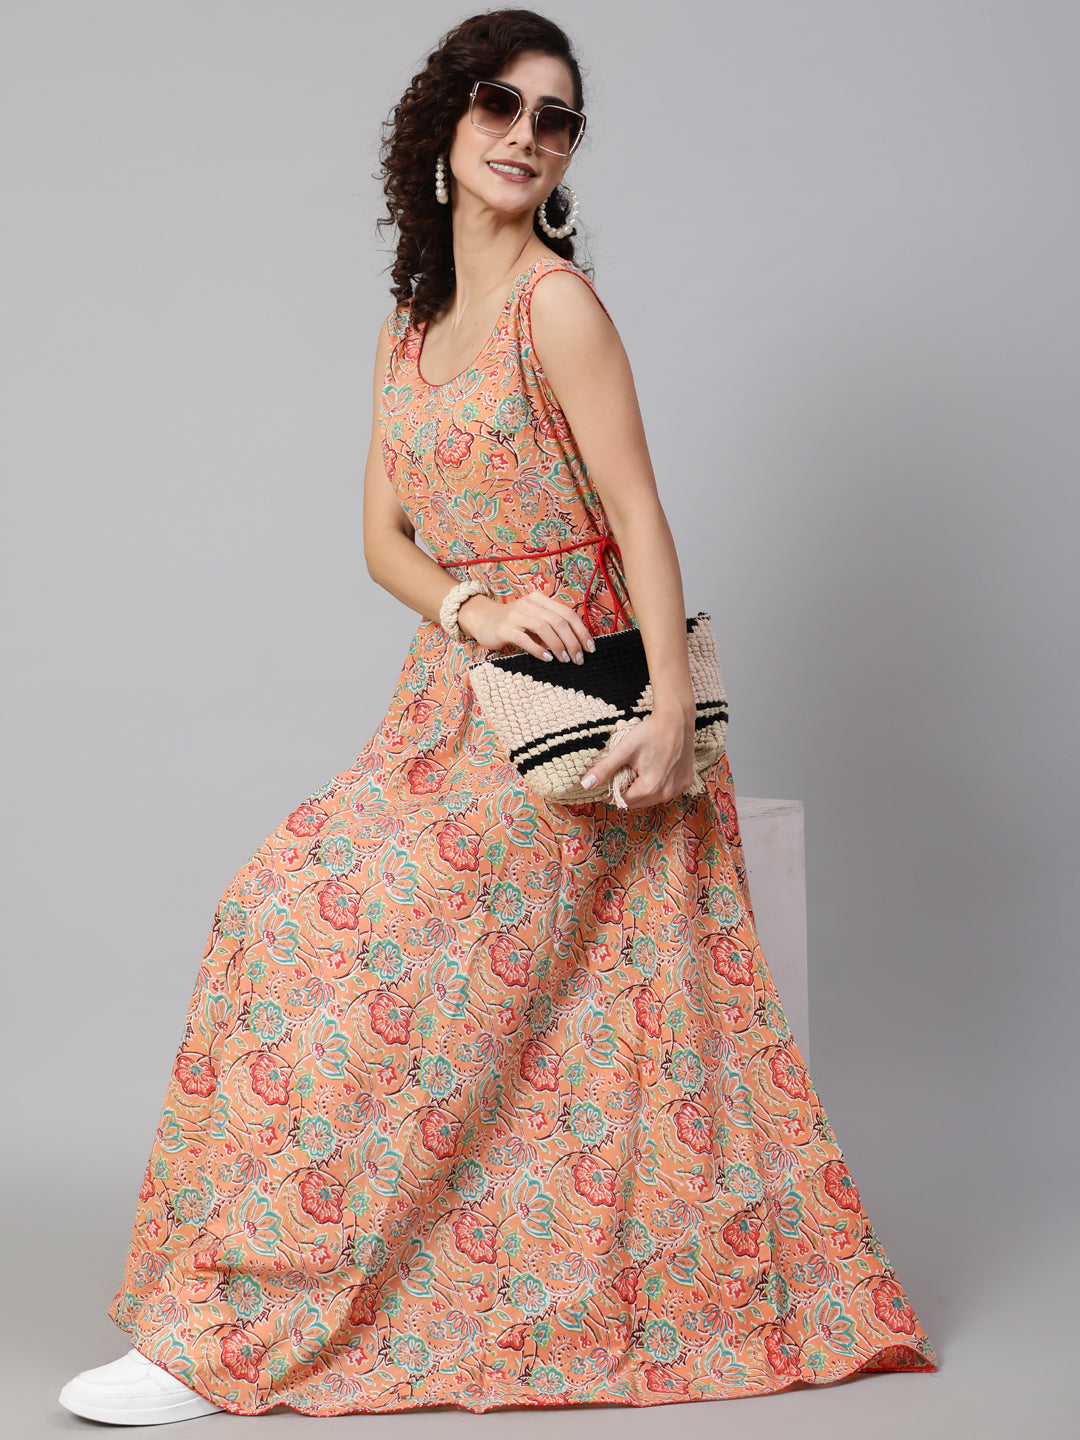 Women's Peach Floral Print Flared Maxi Dress - Aks